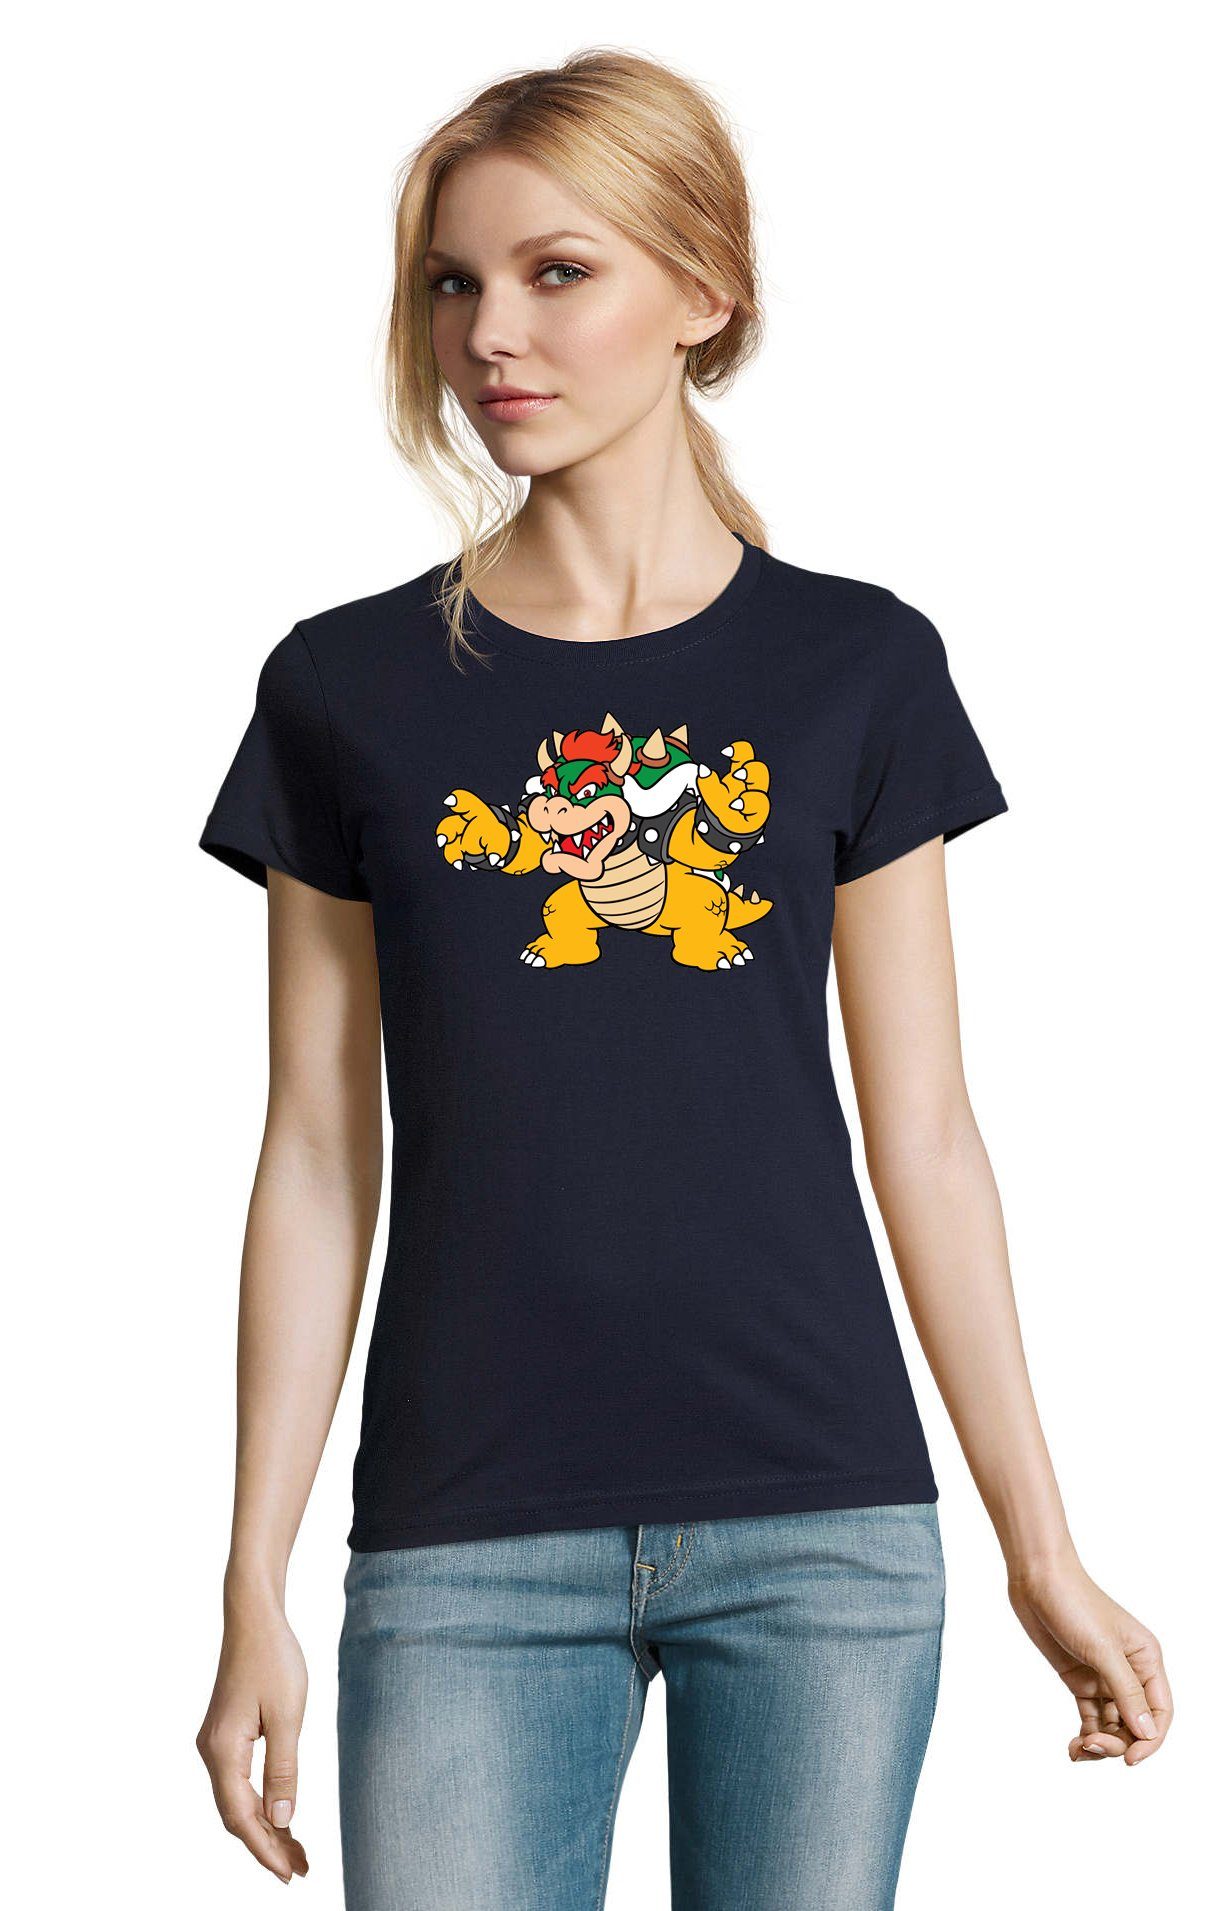 Konsole Mario Gamer Damen Luigi Bowser T-Shirt Gaming Game Navyblau & Blondie Yoshi Nintendo Brownie